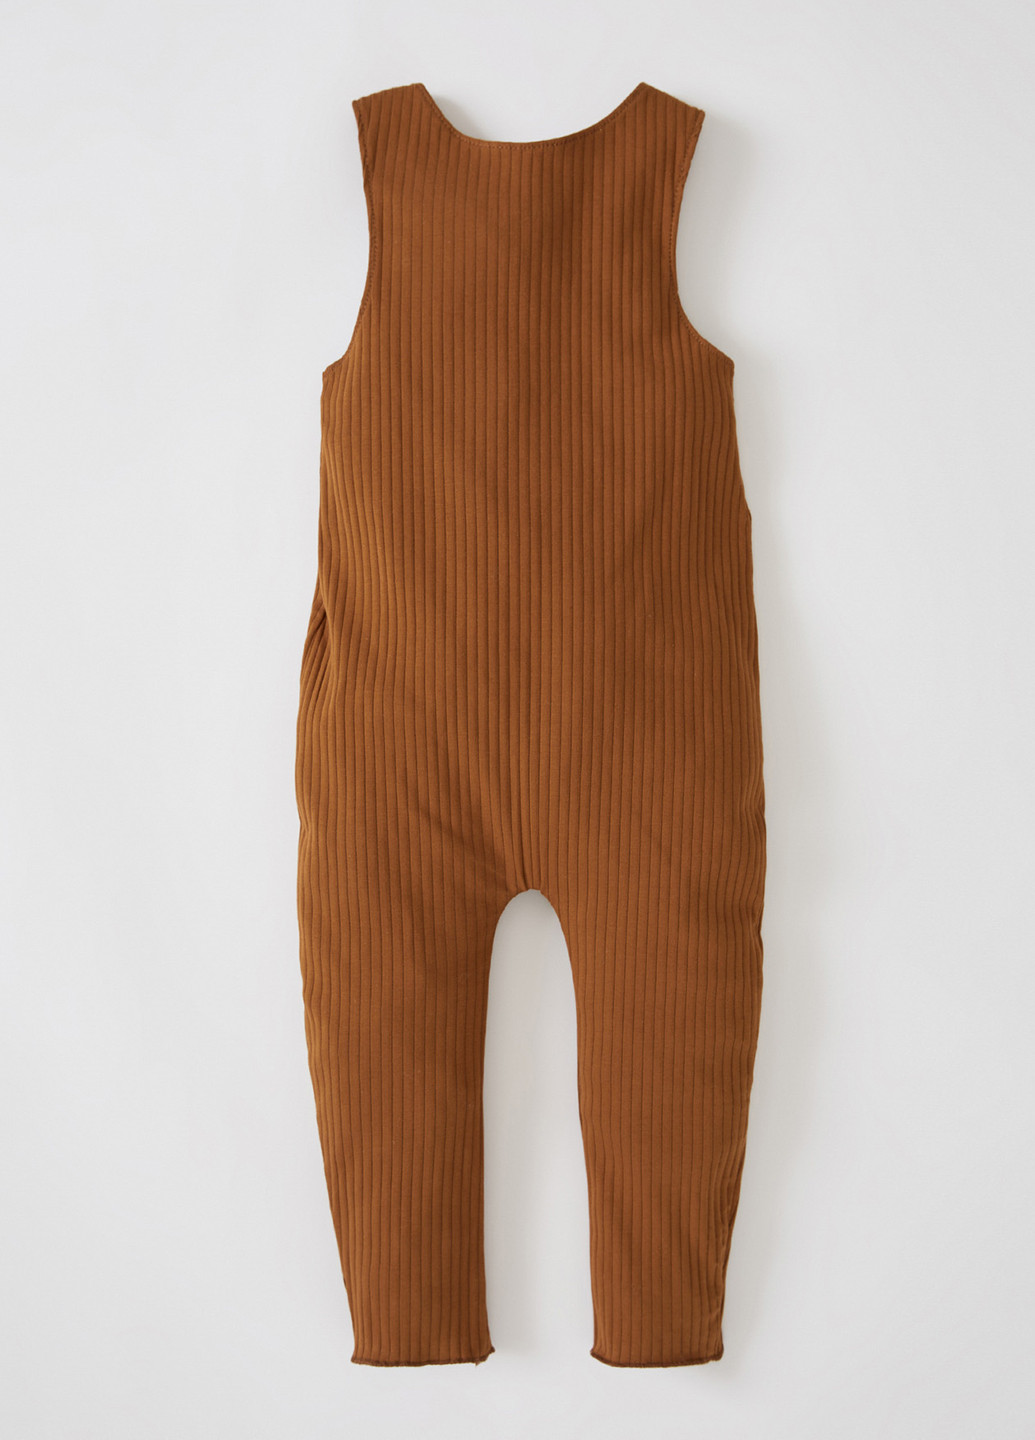 Комбинезон DeFacto комбинезон-брюки однотонный коричневый кэжуал трикотаж, хлопок